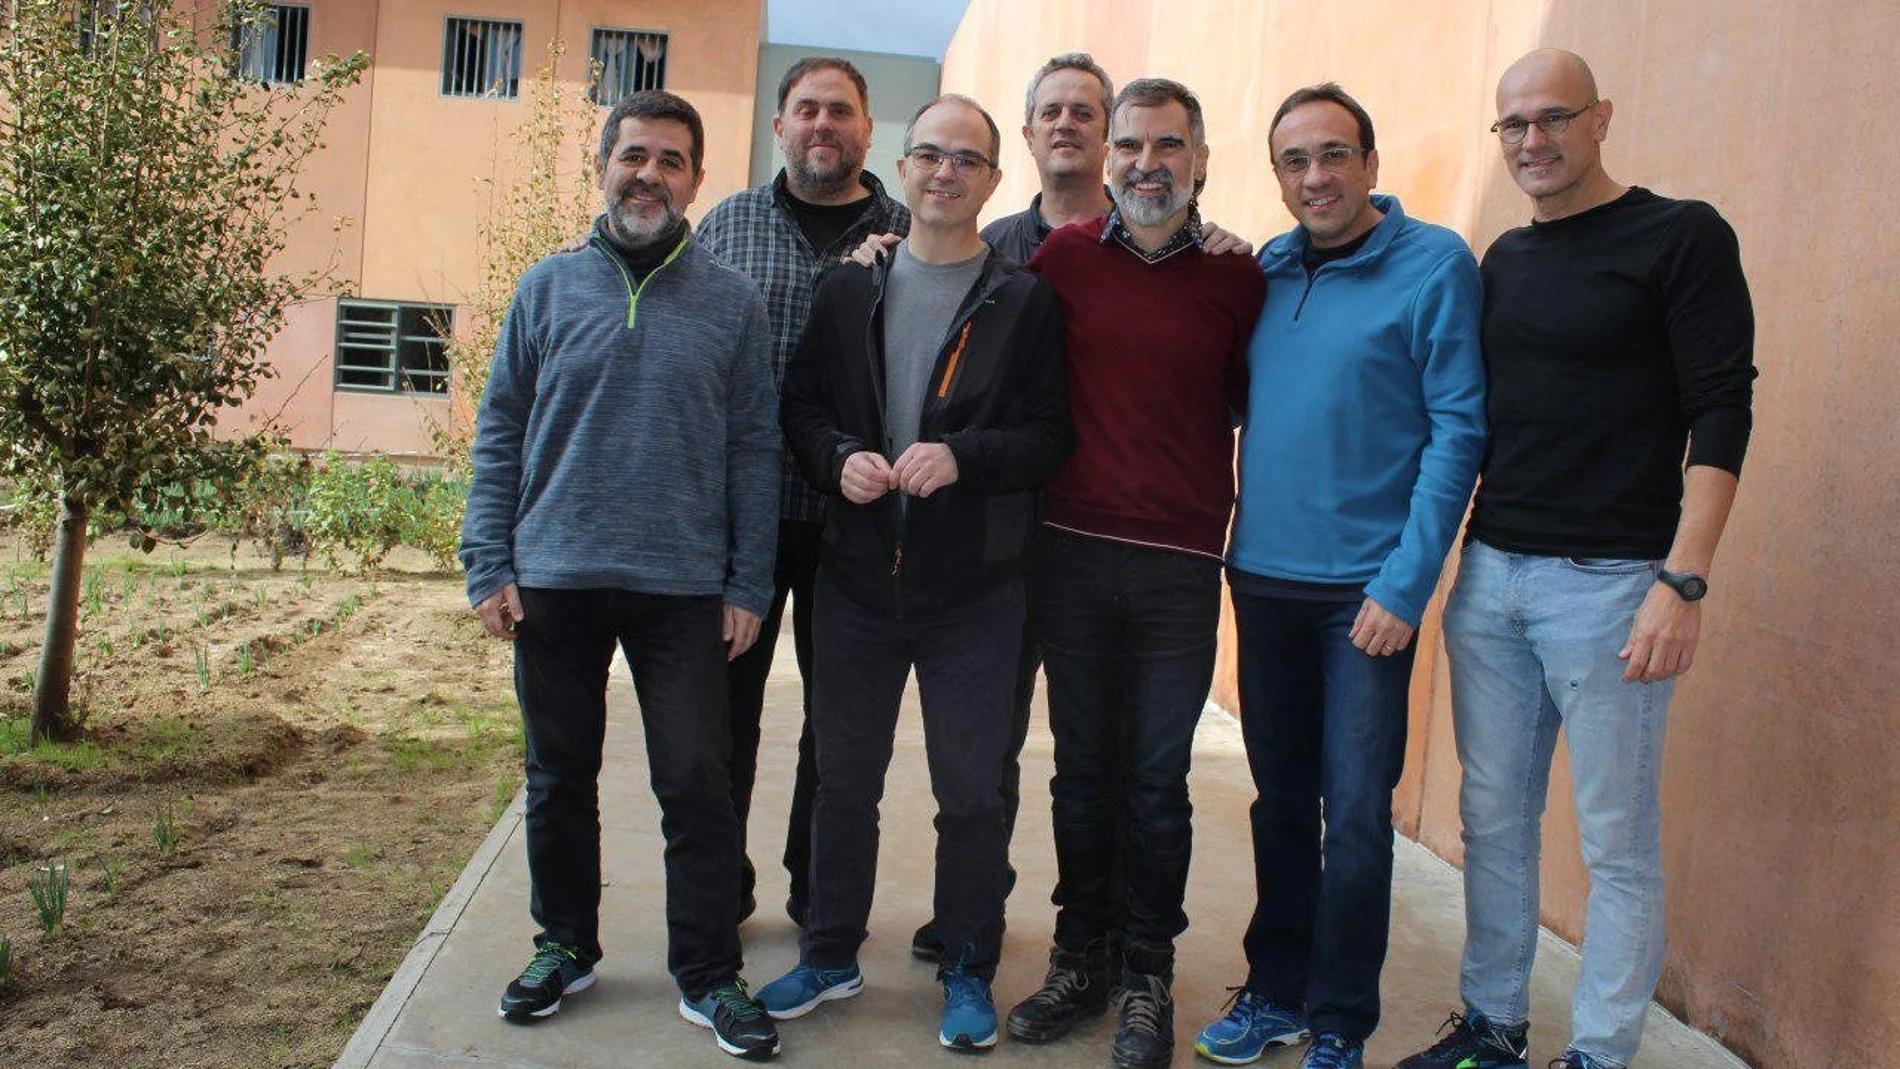 Los siete dirigentes independentistas presos en la cárcel de Lledoners. Jordi Sànchez, Oriol Junqueras, Jordi Turull, Joaquim Forn, Jordi Cuixart, Josep Rull y Raül Romeva.